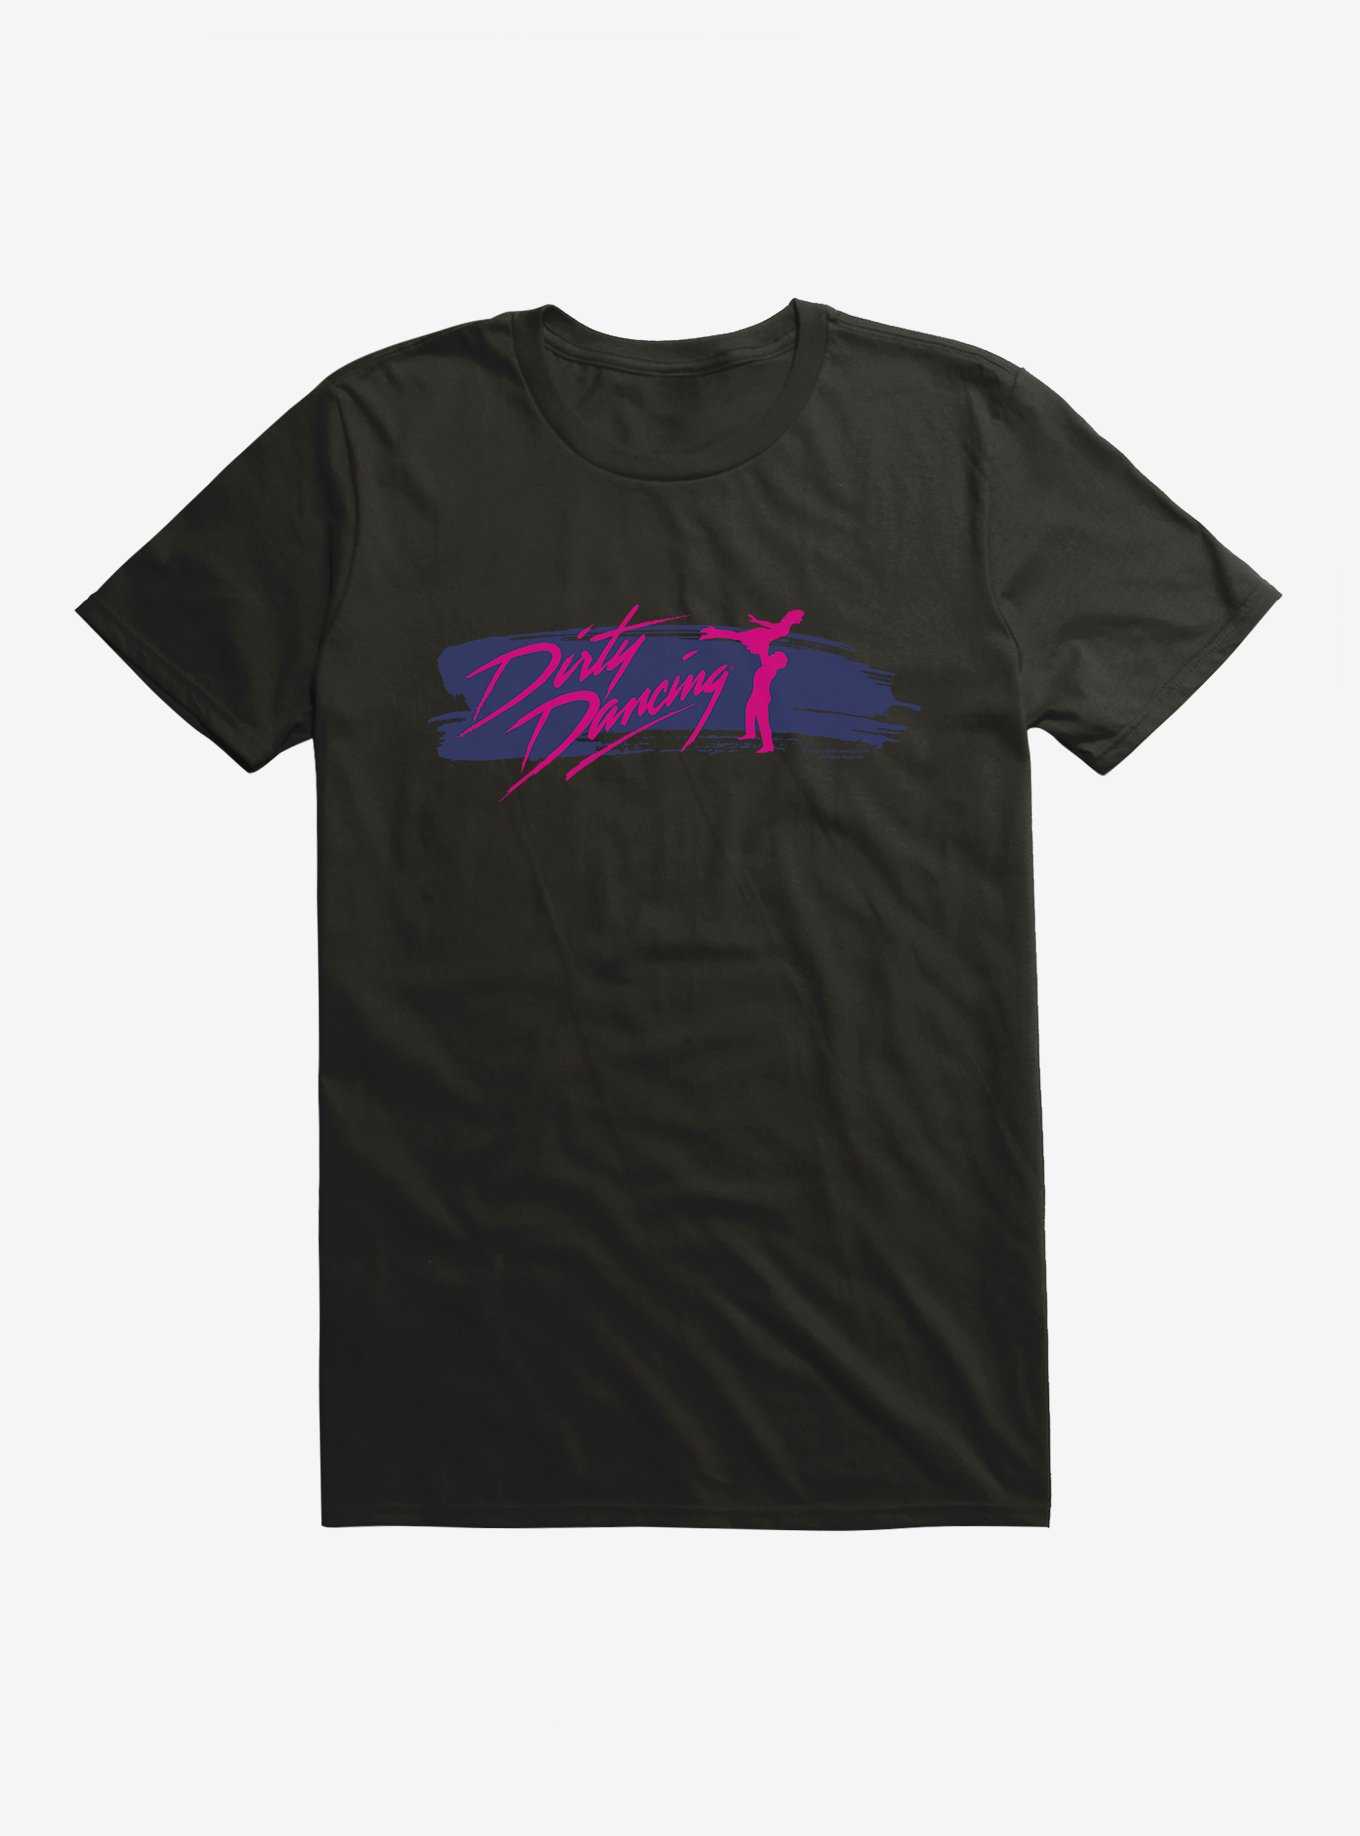 Dirty Dancing Brush Stroke Title T-Shirt, , hi-res